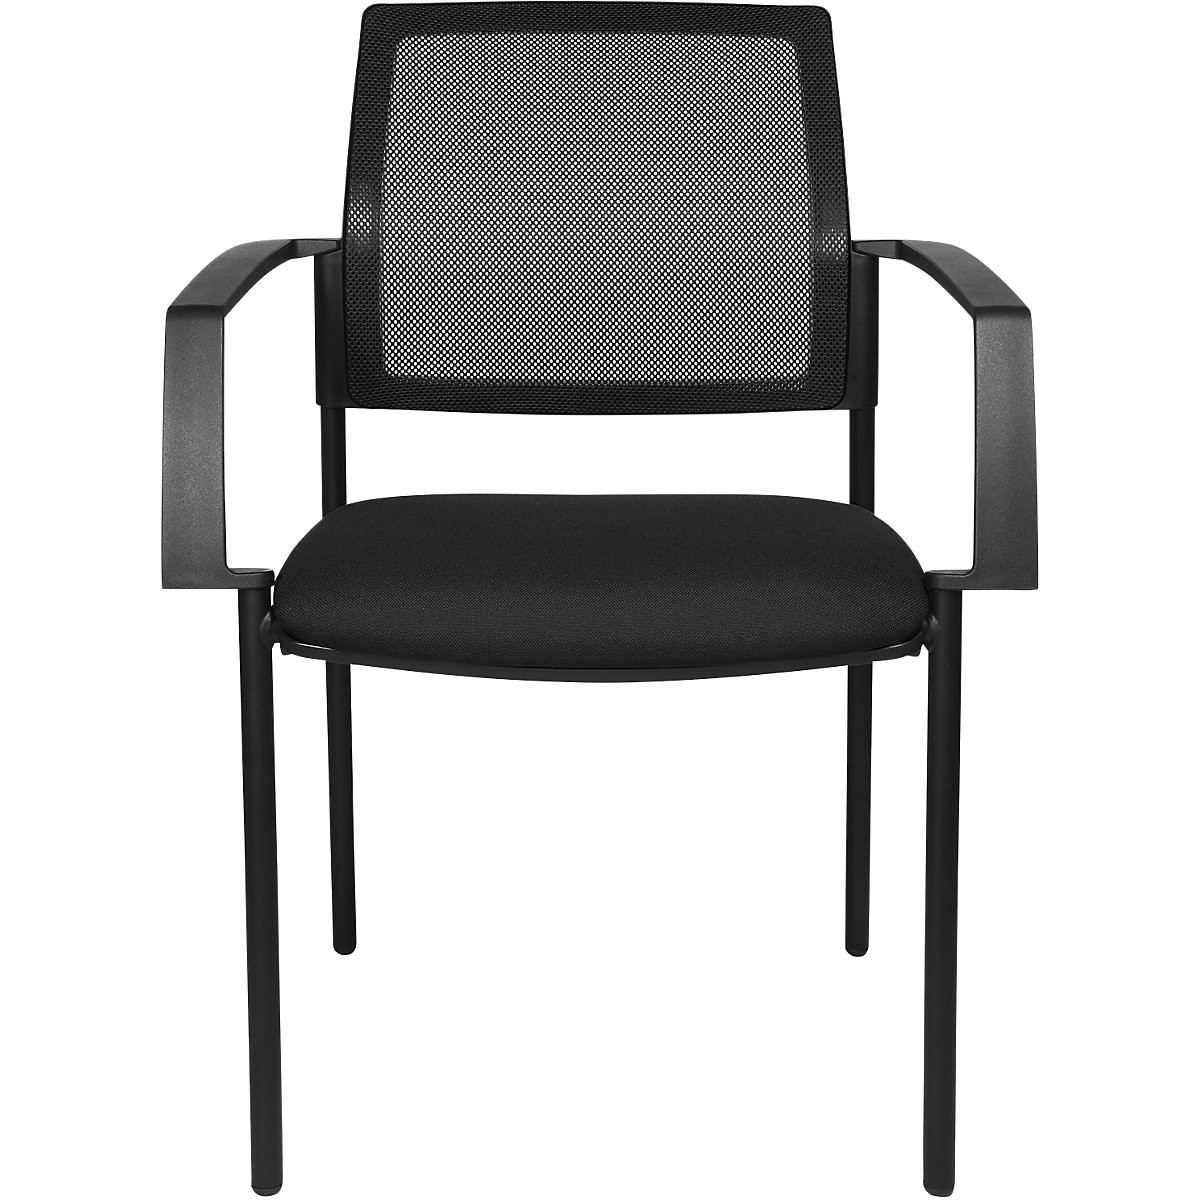 Složiva stolica s mrežastim naslonom – Topstar